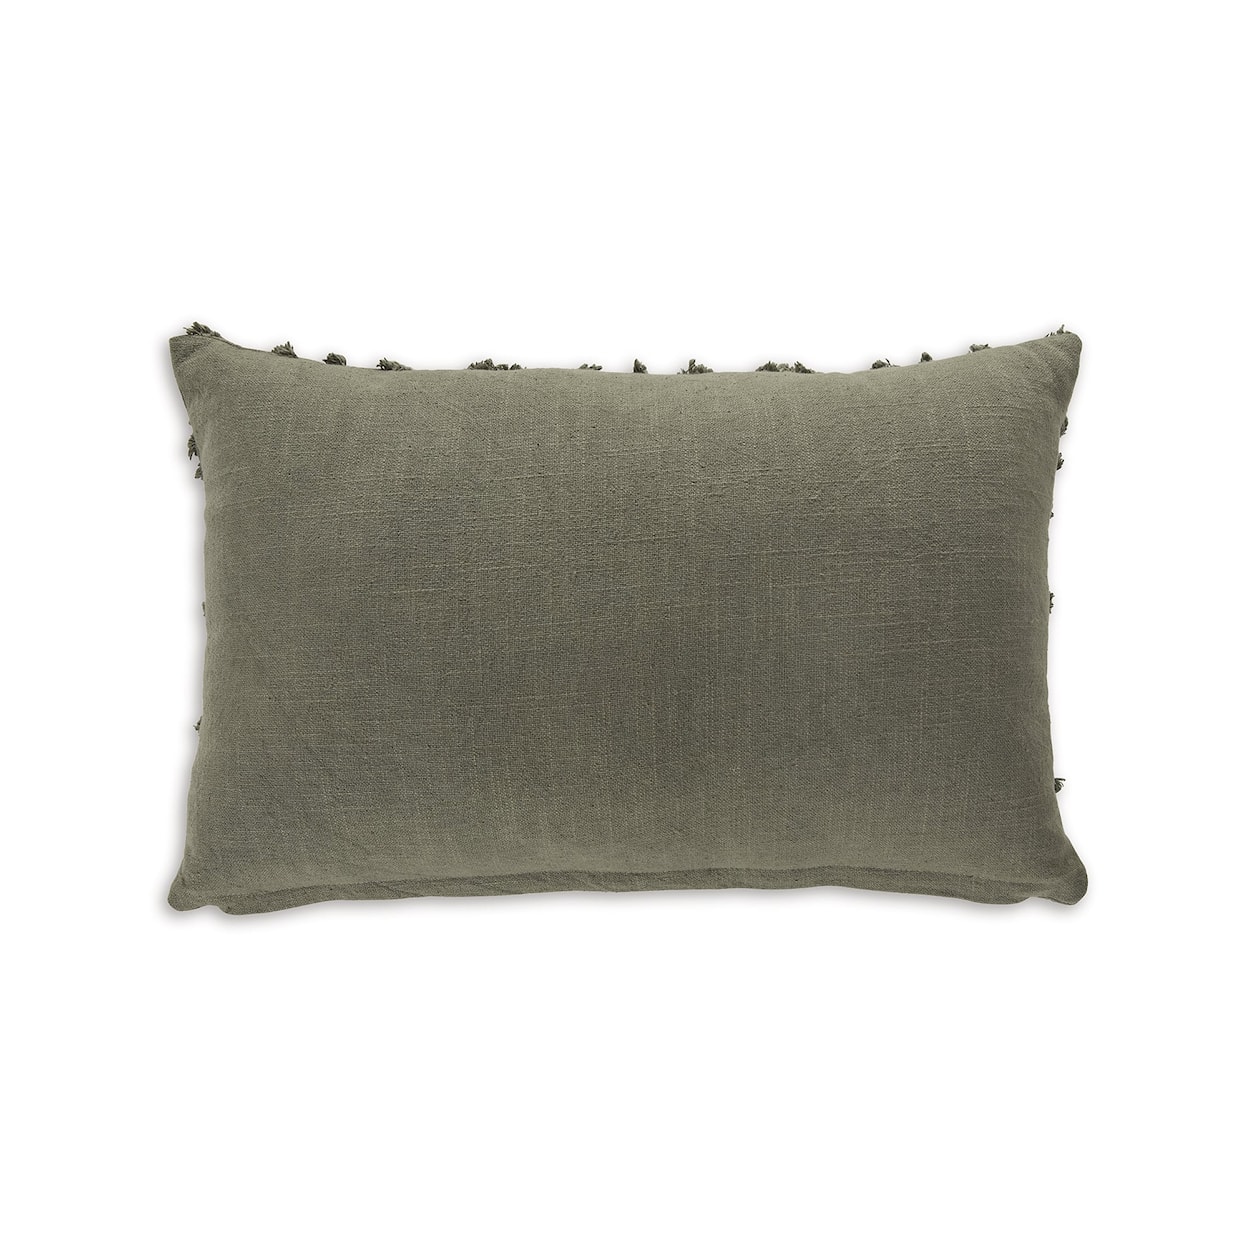 Ashley Signature Design Finnbrook Pillow (Set of 4)